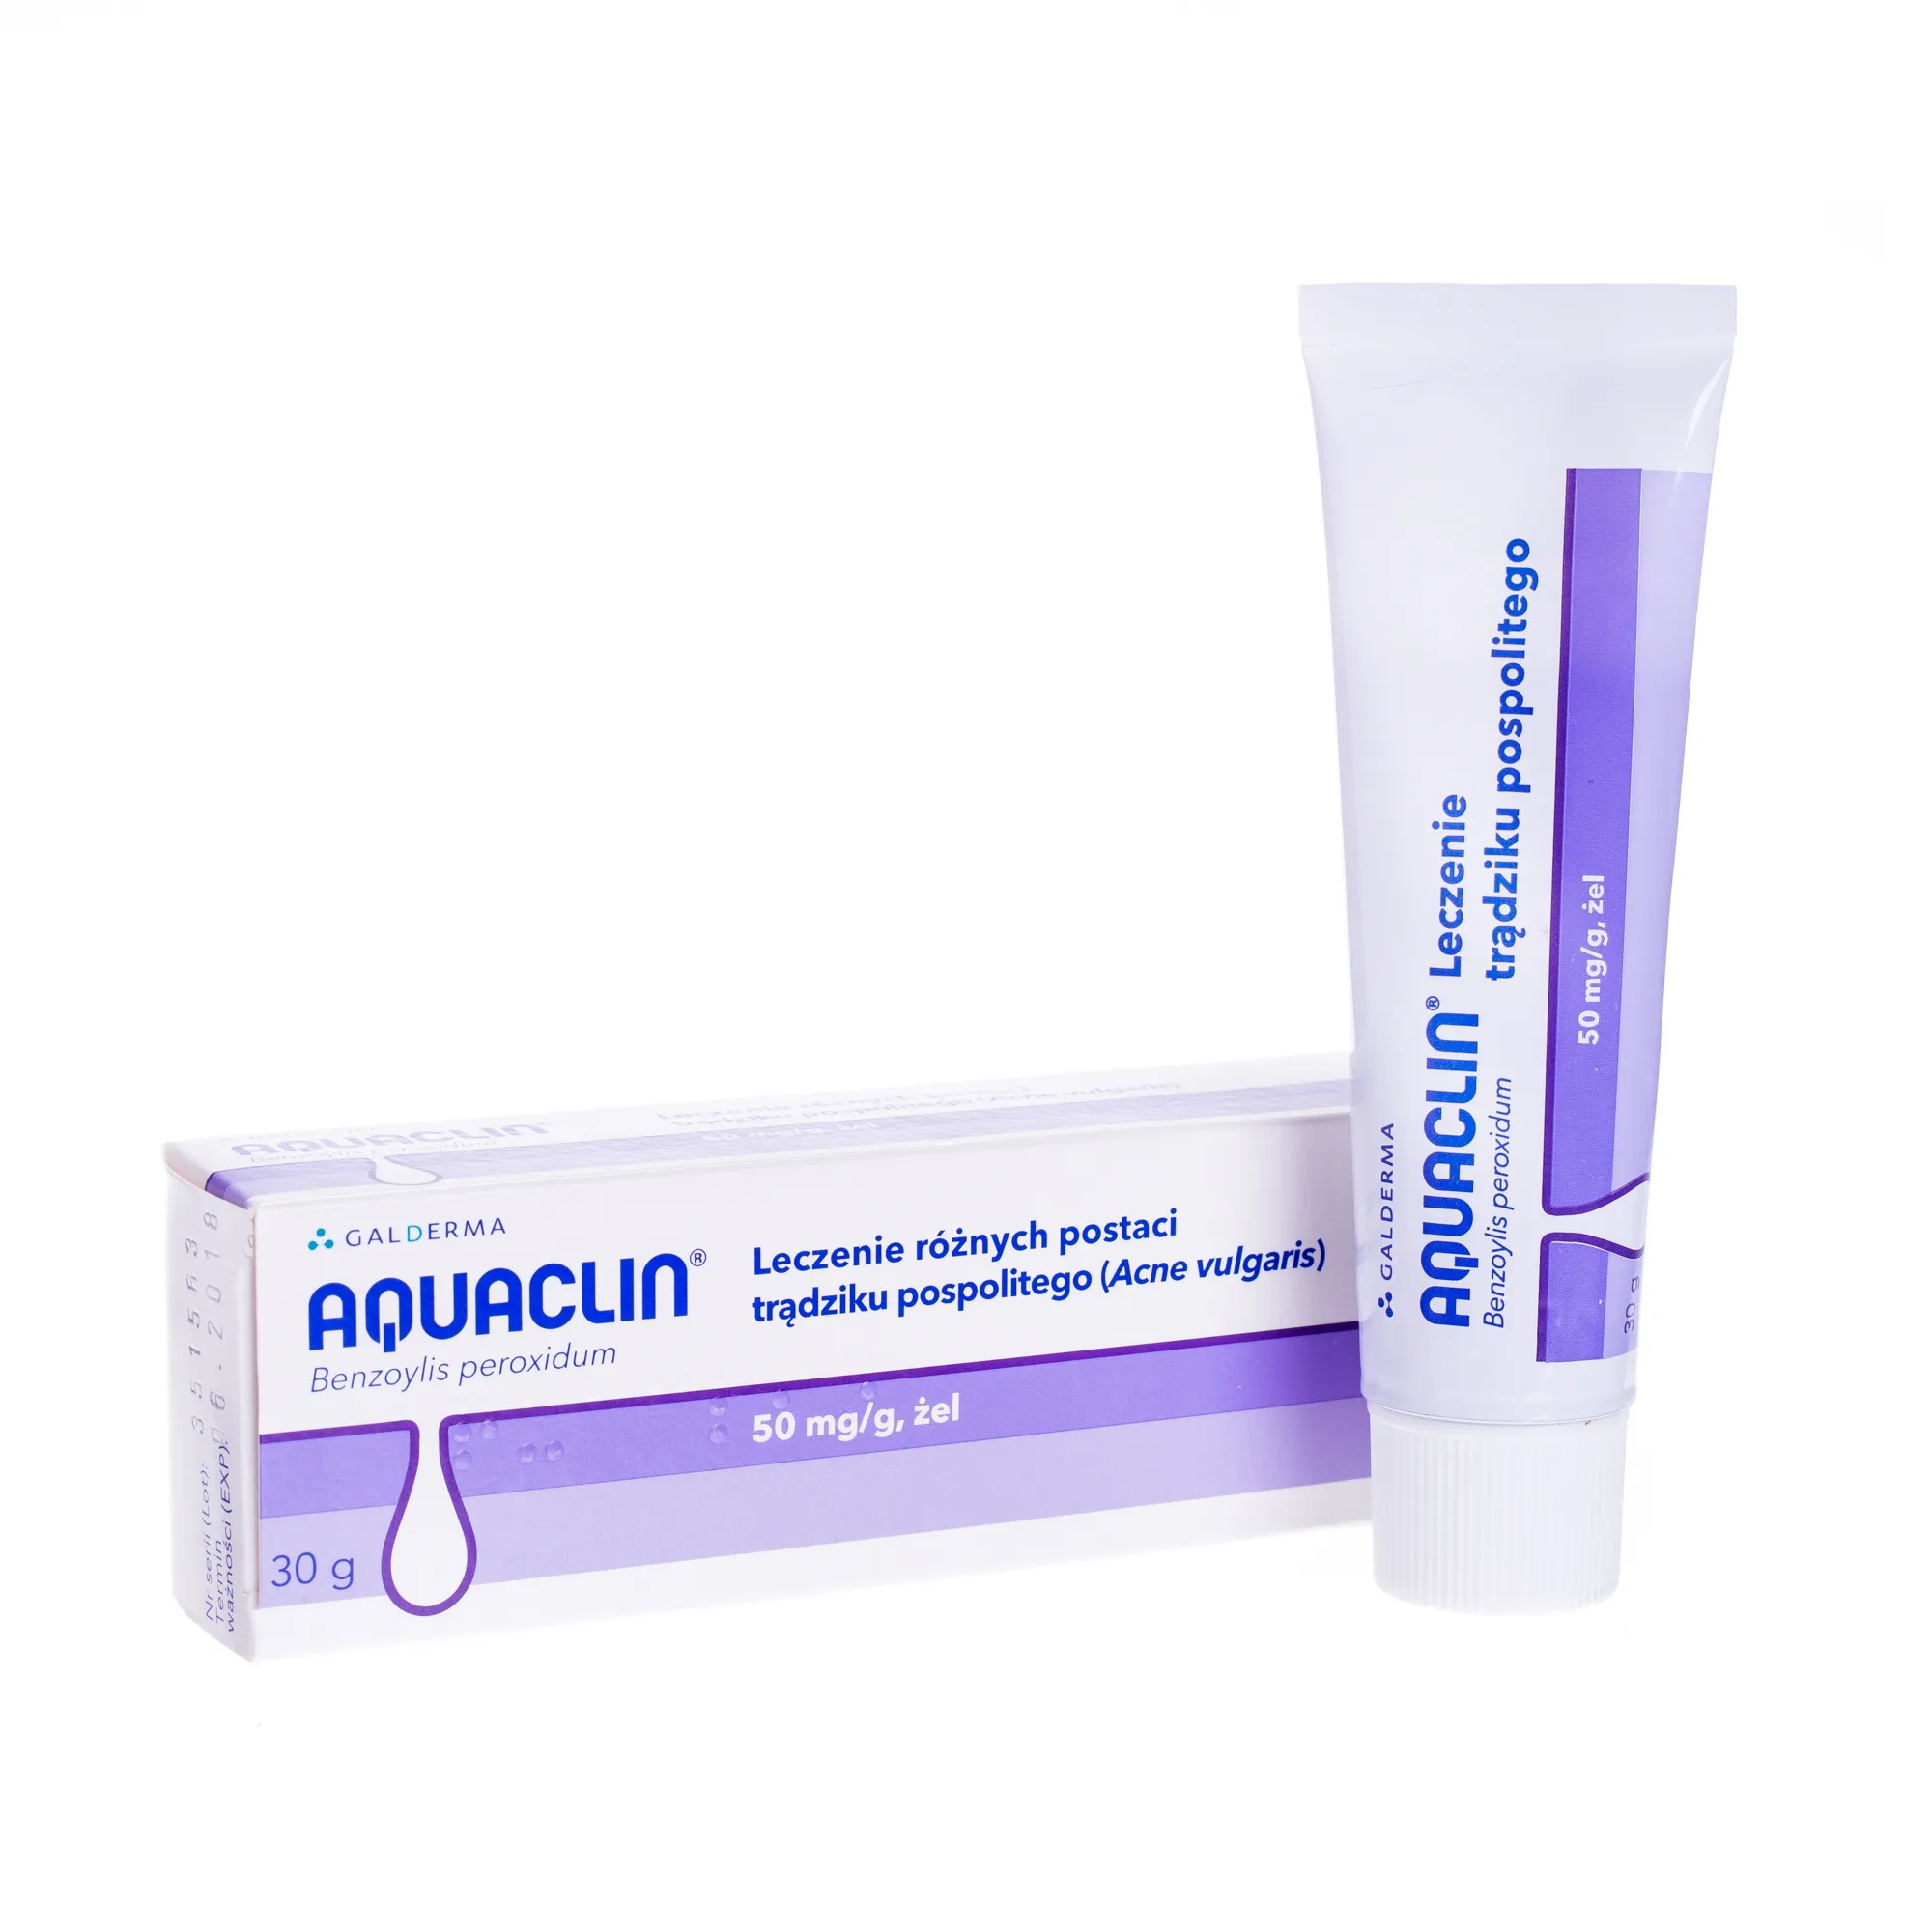 Aquaclin, żel do leczenia trądziku pospolitego, 50mg/g